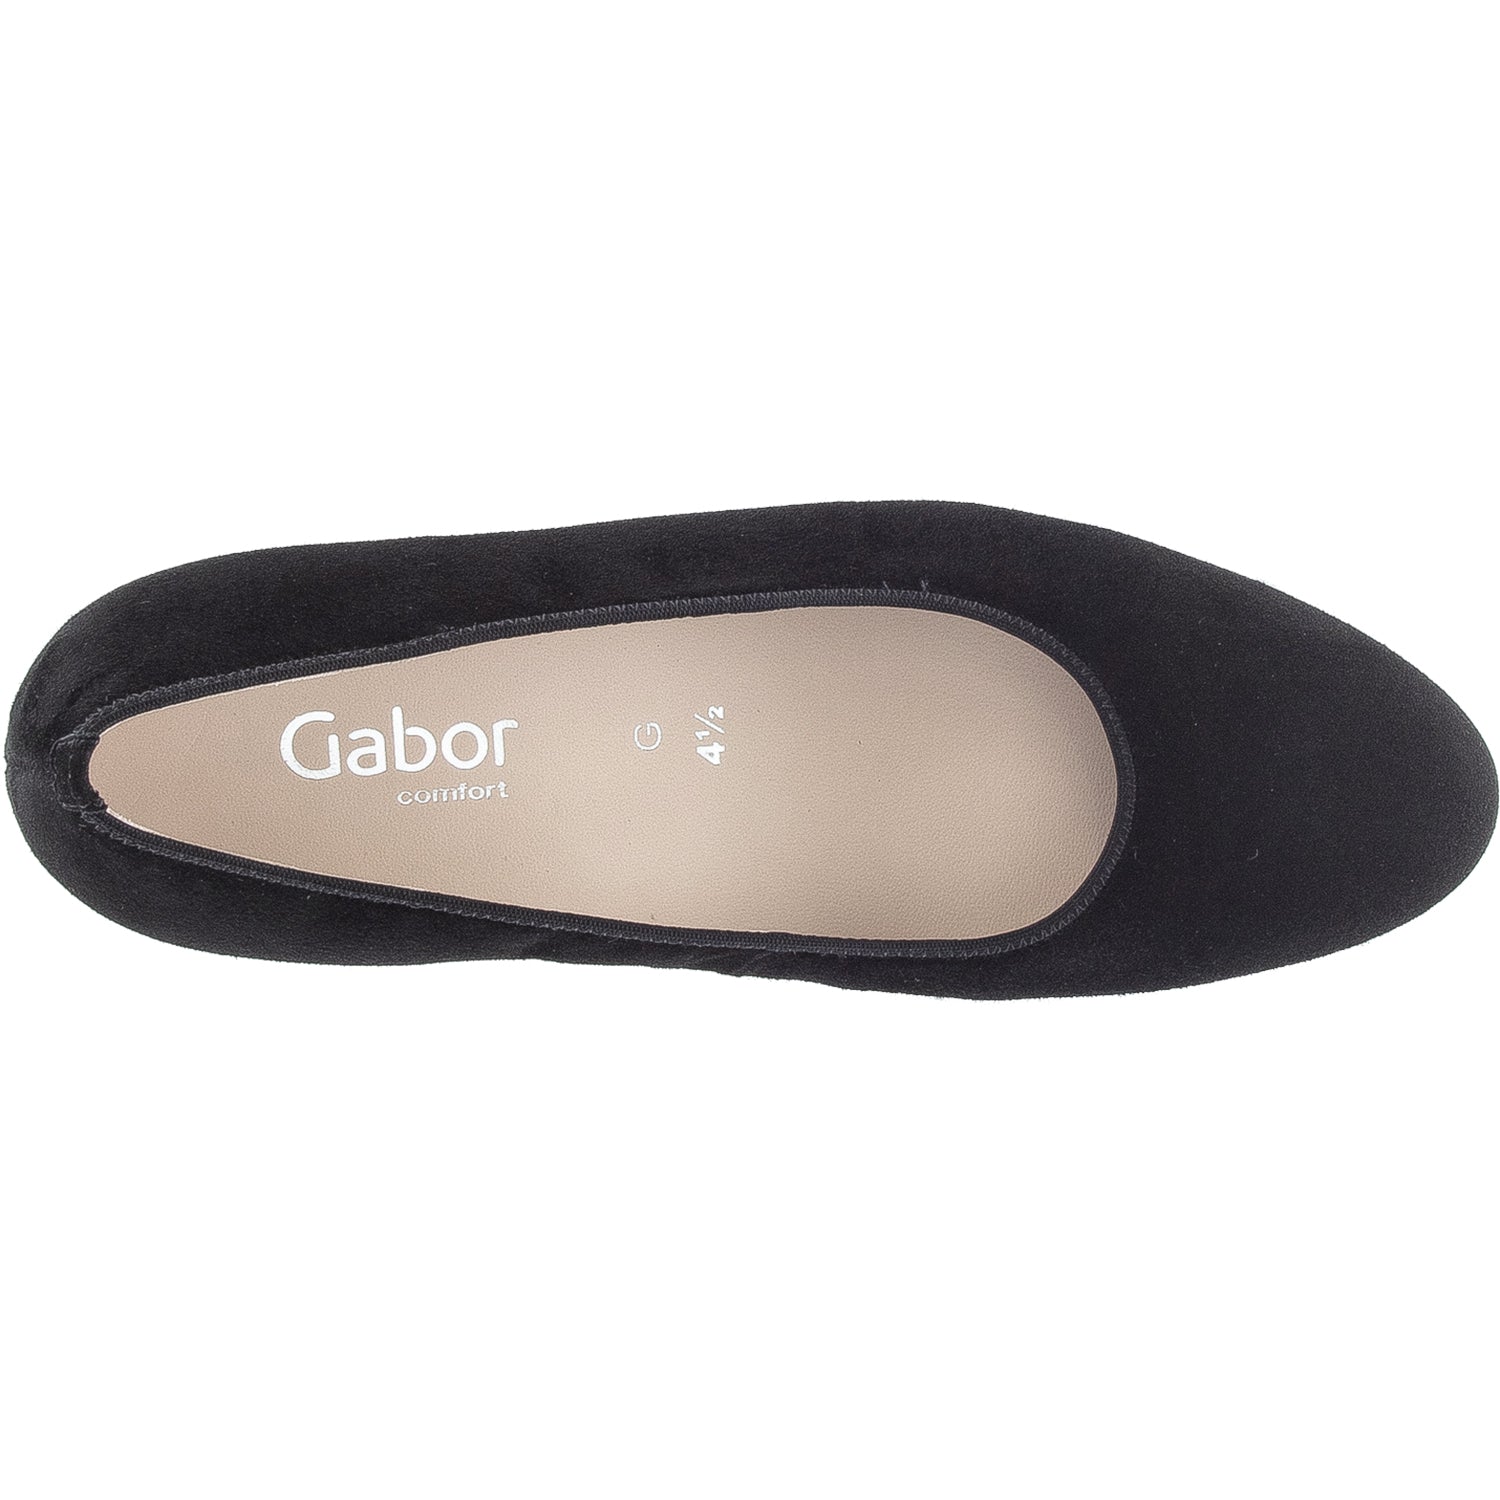 Gabor 92.170.47 | Women's High Heel Pumps | Footwear etc.